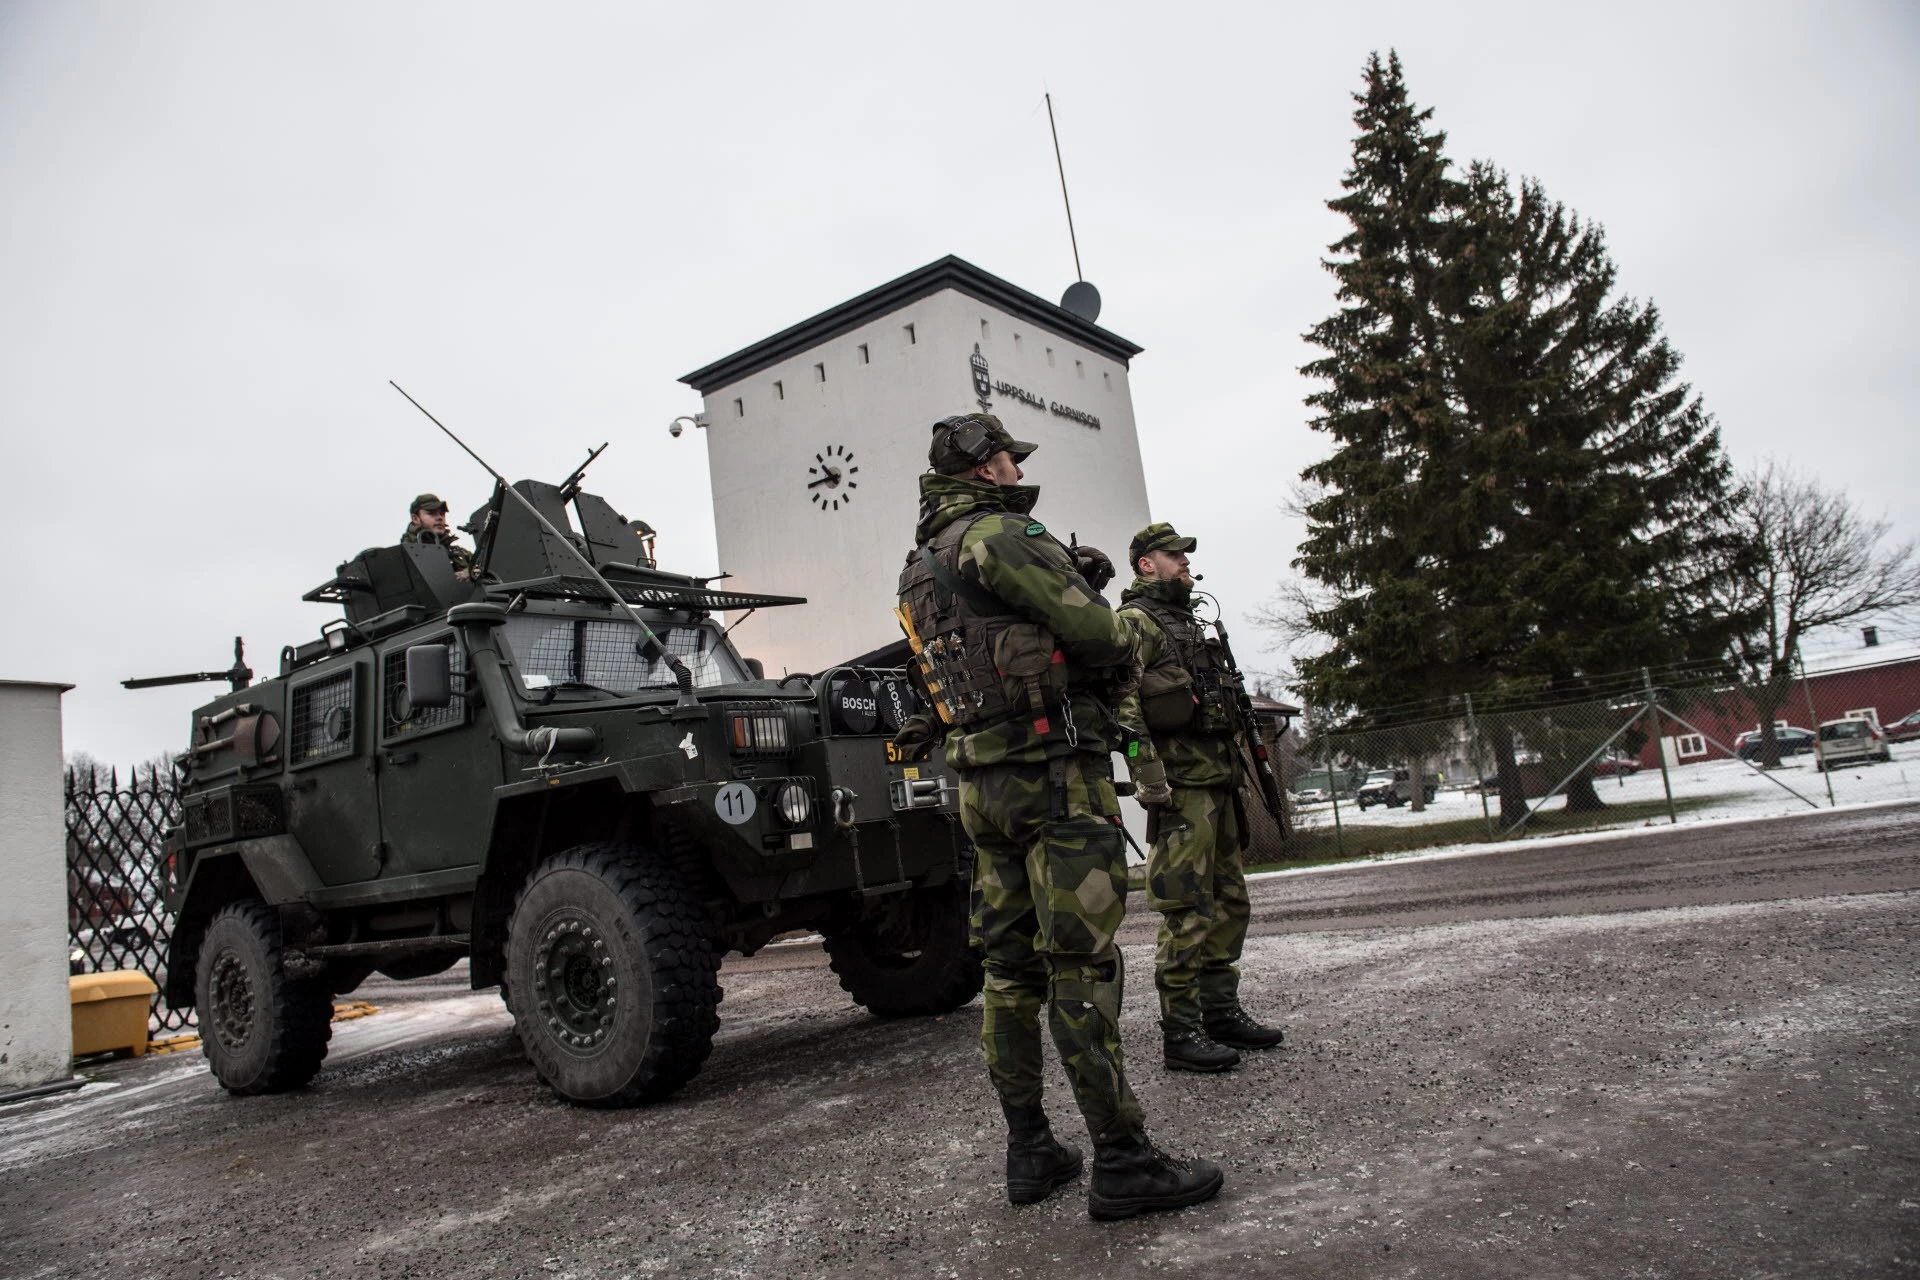 Một sự việc hi hữu vừa mới xảy ra khi hai xe bọc thép Terrangbil 16 của quân đội Thụy Điển đã bị mất trộm cùng nhiều trang thiết bị trên xe. Nguồn ảnh: Pinterest.